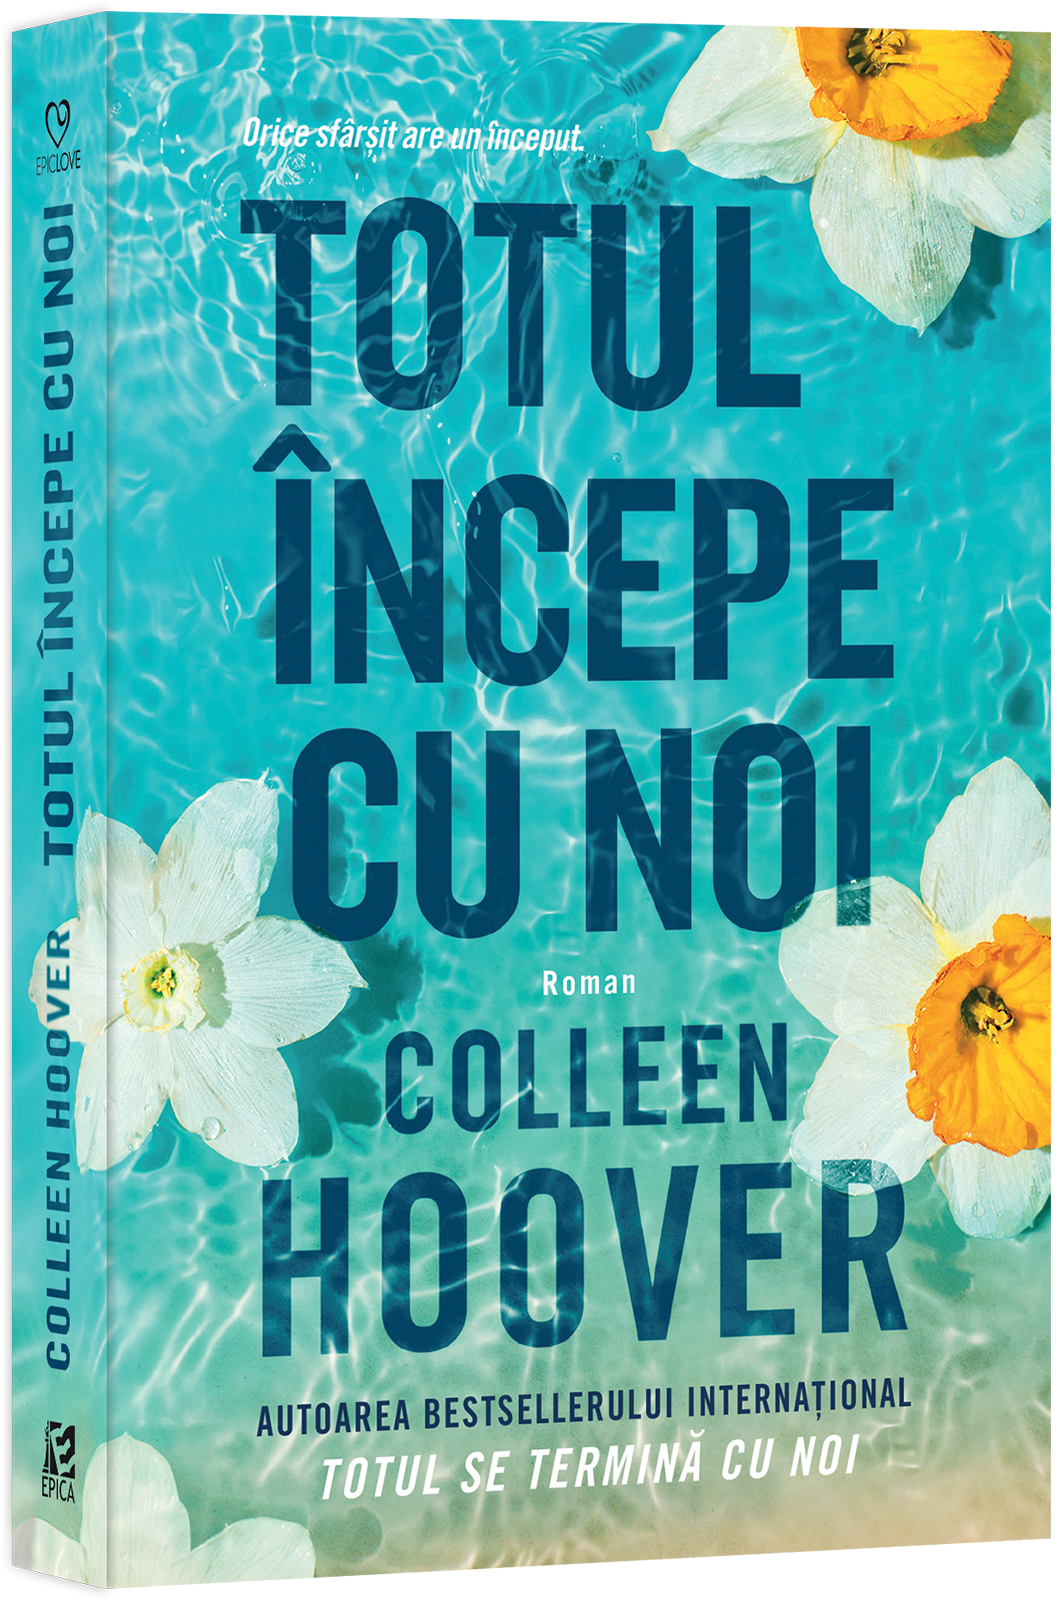 Totul incepe cu noi | Colleen Hoover